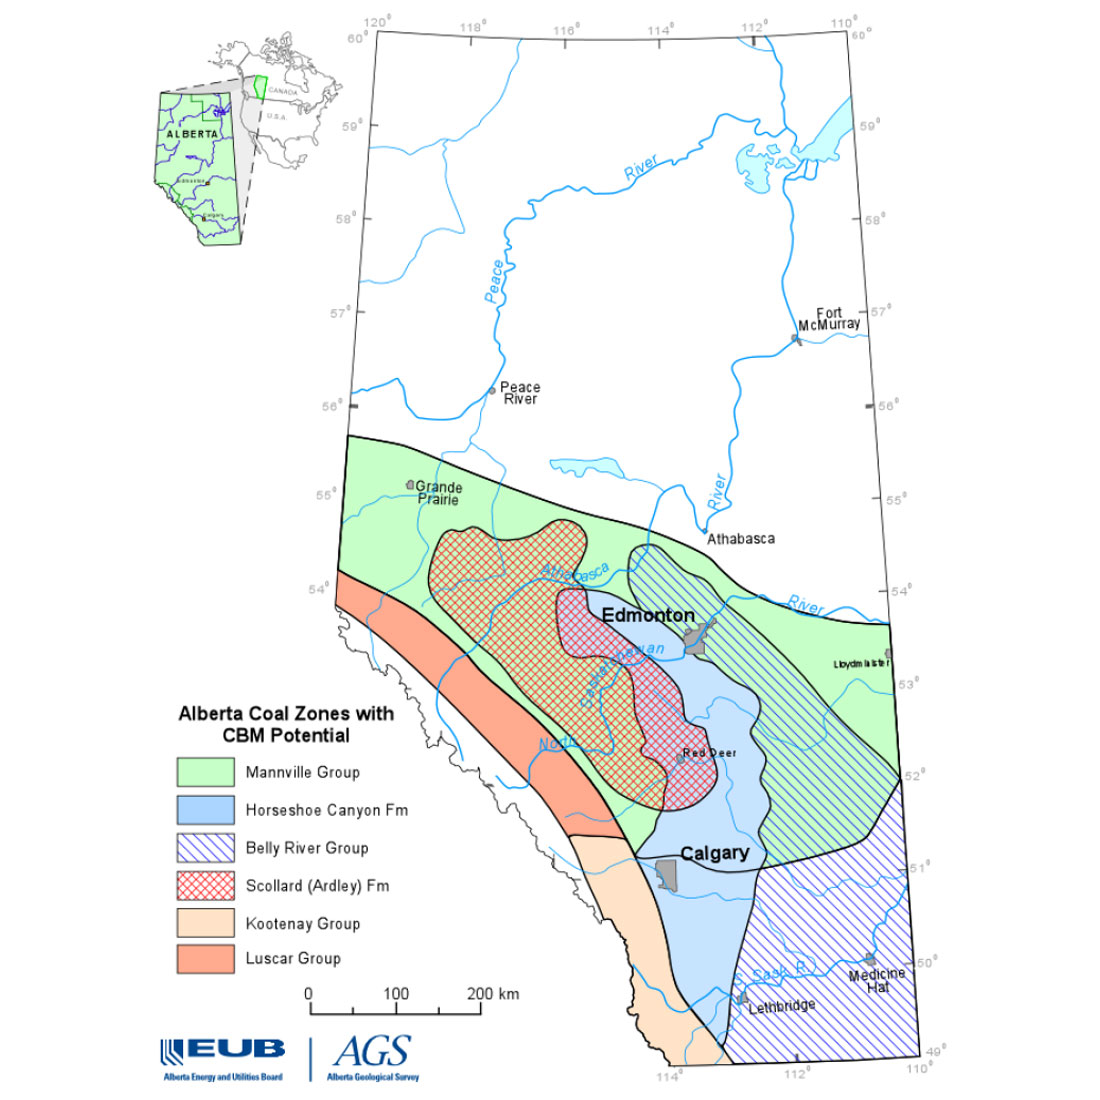 Coal Lake Alberta Depth Chart